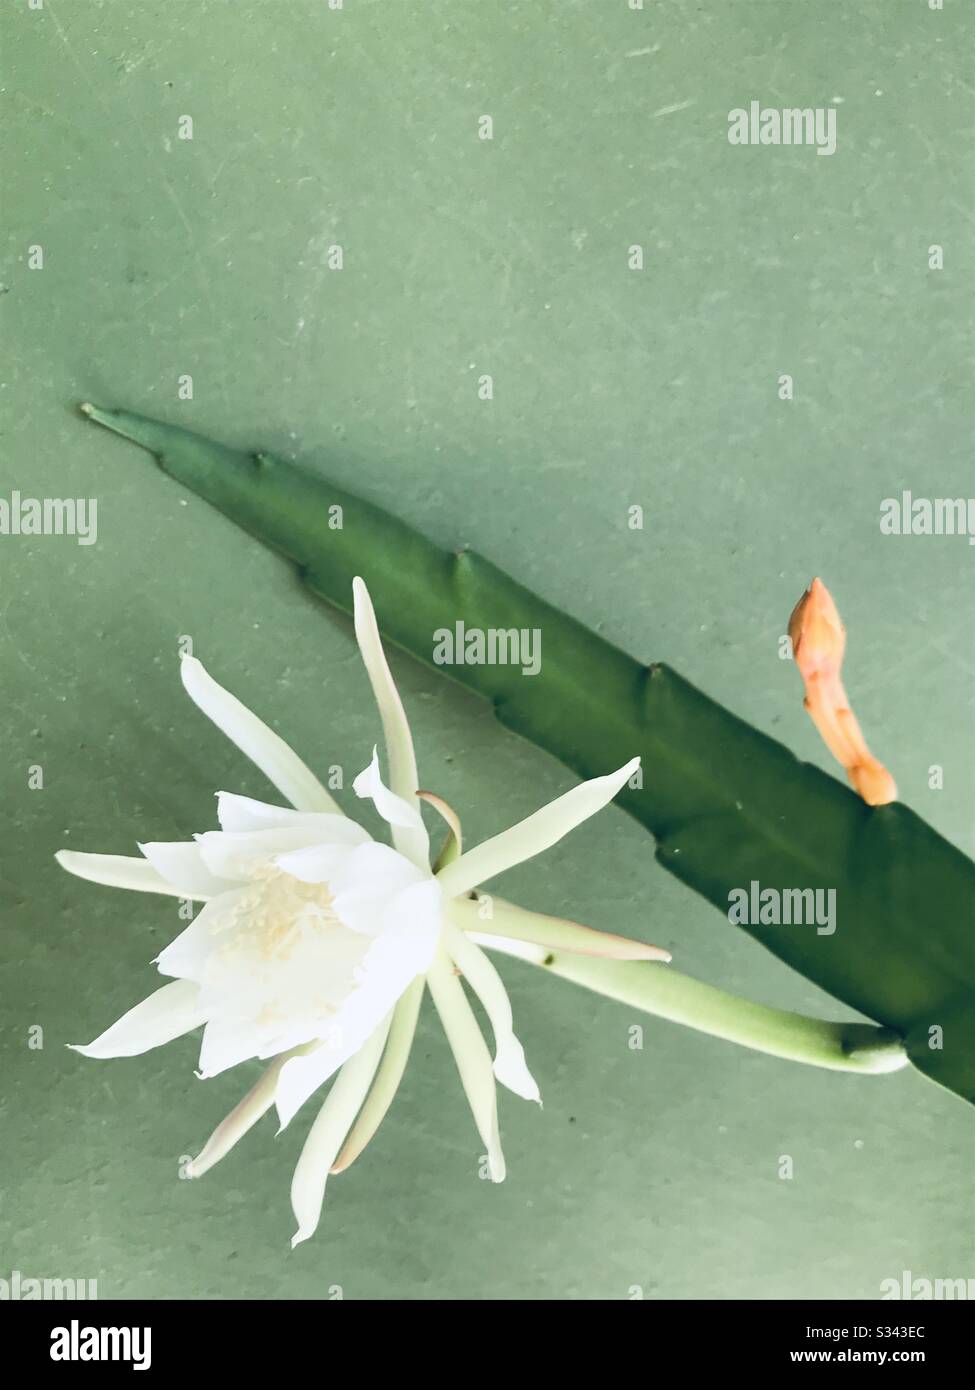 Nishagandhi Pflanze blüht mit niedlicher weißer Blume vor grünem Hintergrund, Holländlers Pfeifenblume, Epiphyllum Oxypetalum, Königin der Nacht, Kakteen-Orchidee Stockfoto